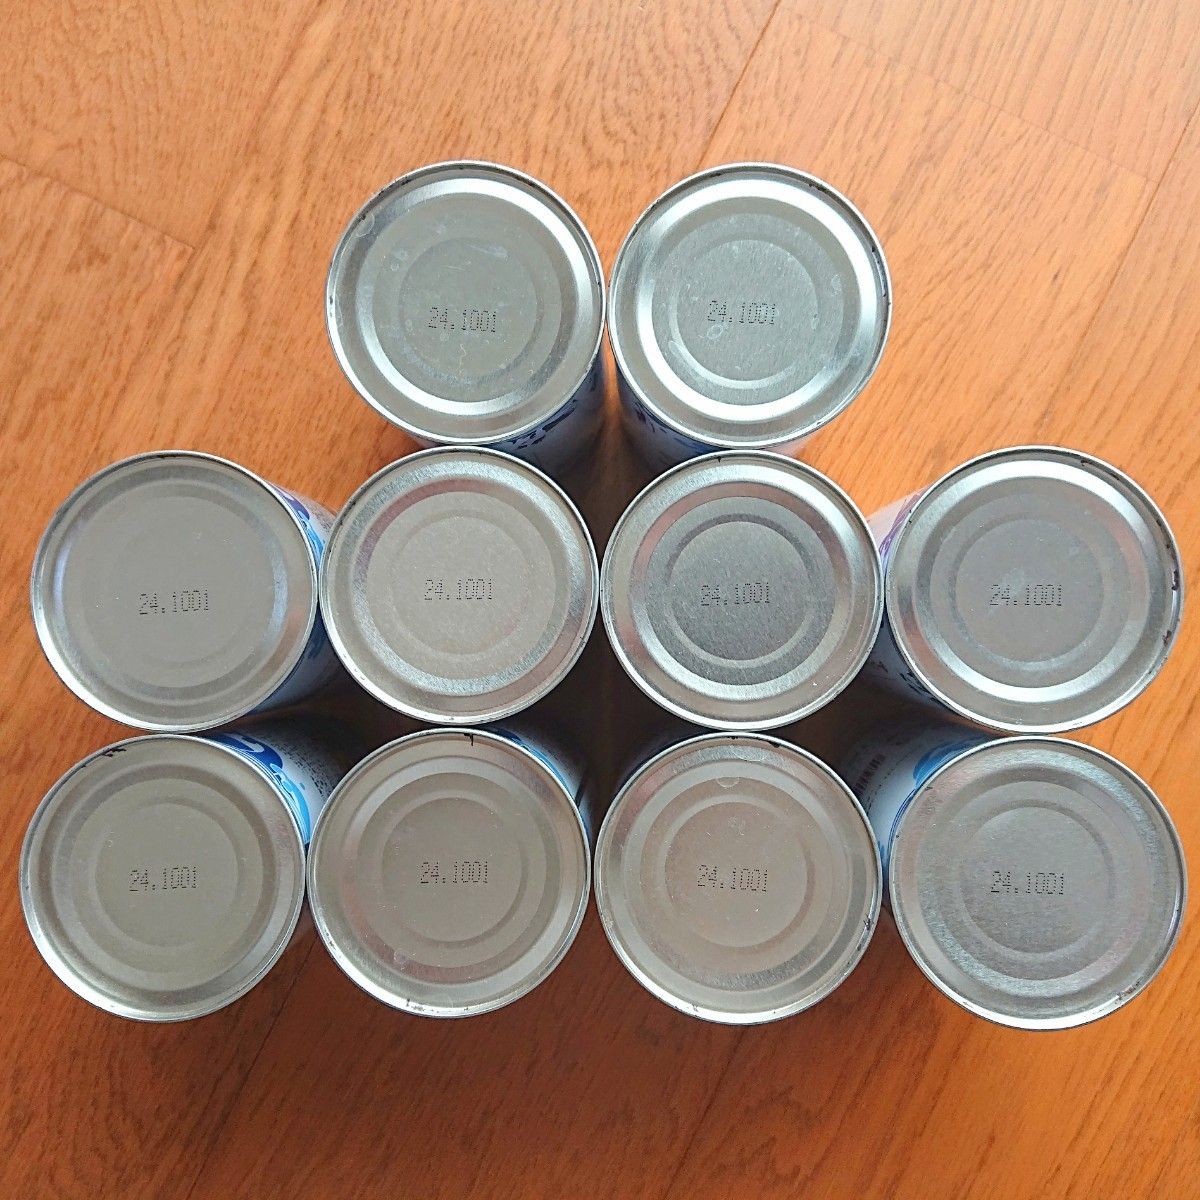 カルカン たまの伝説 キャットフード 猫用 缶詰 ウェットフード 総合栄養食 グレイン グルテンフリー 未開封 14種47缶セット